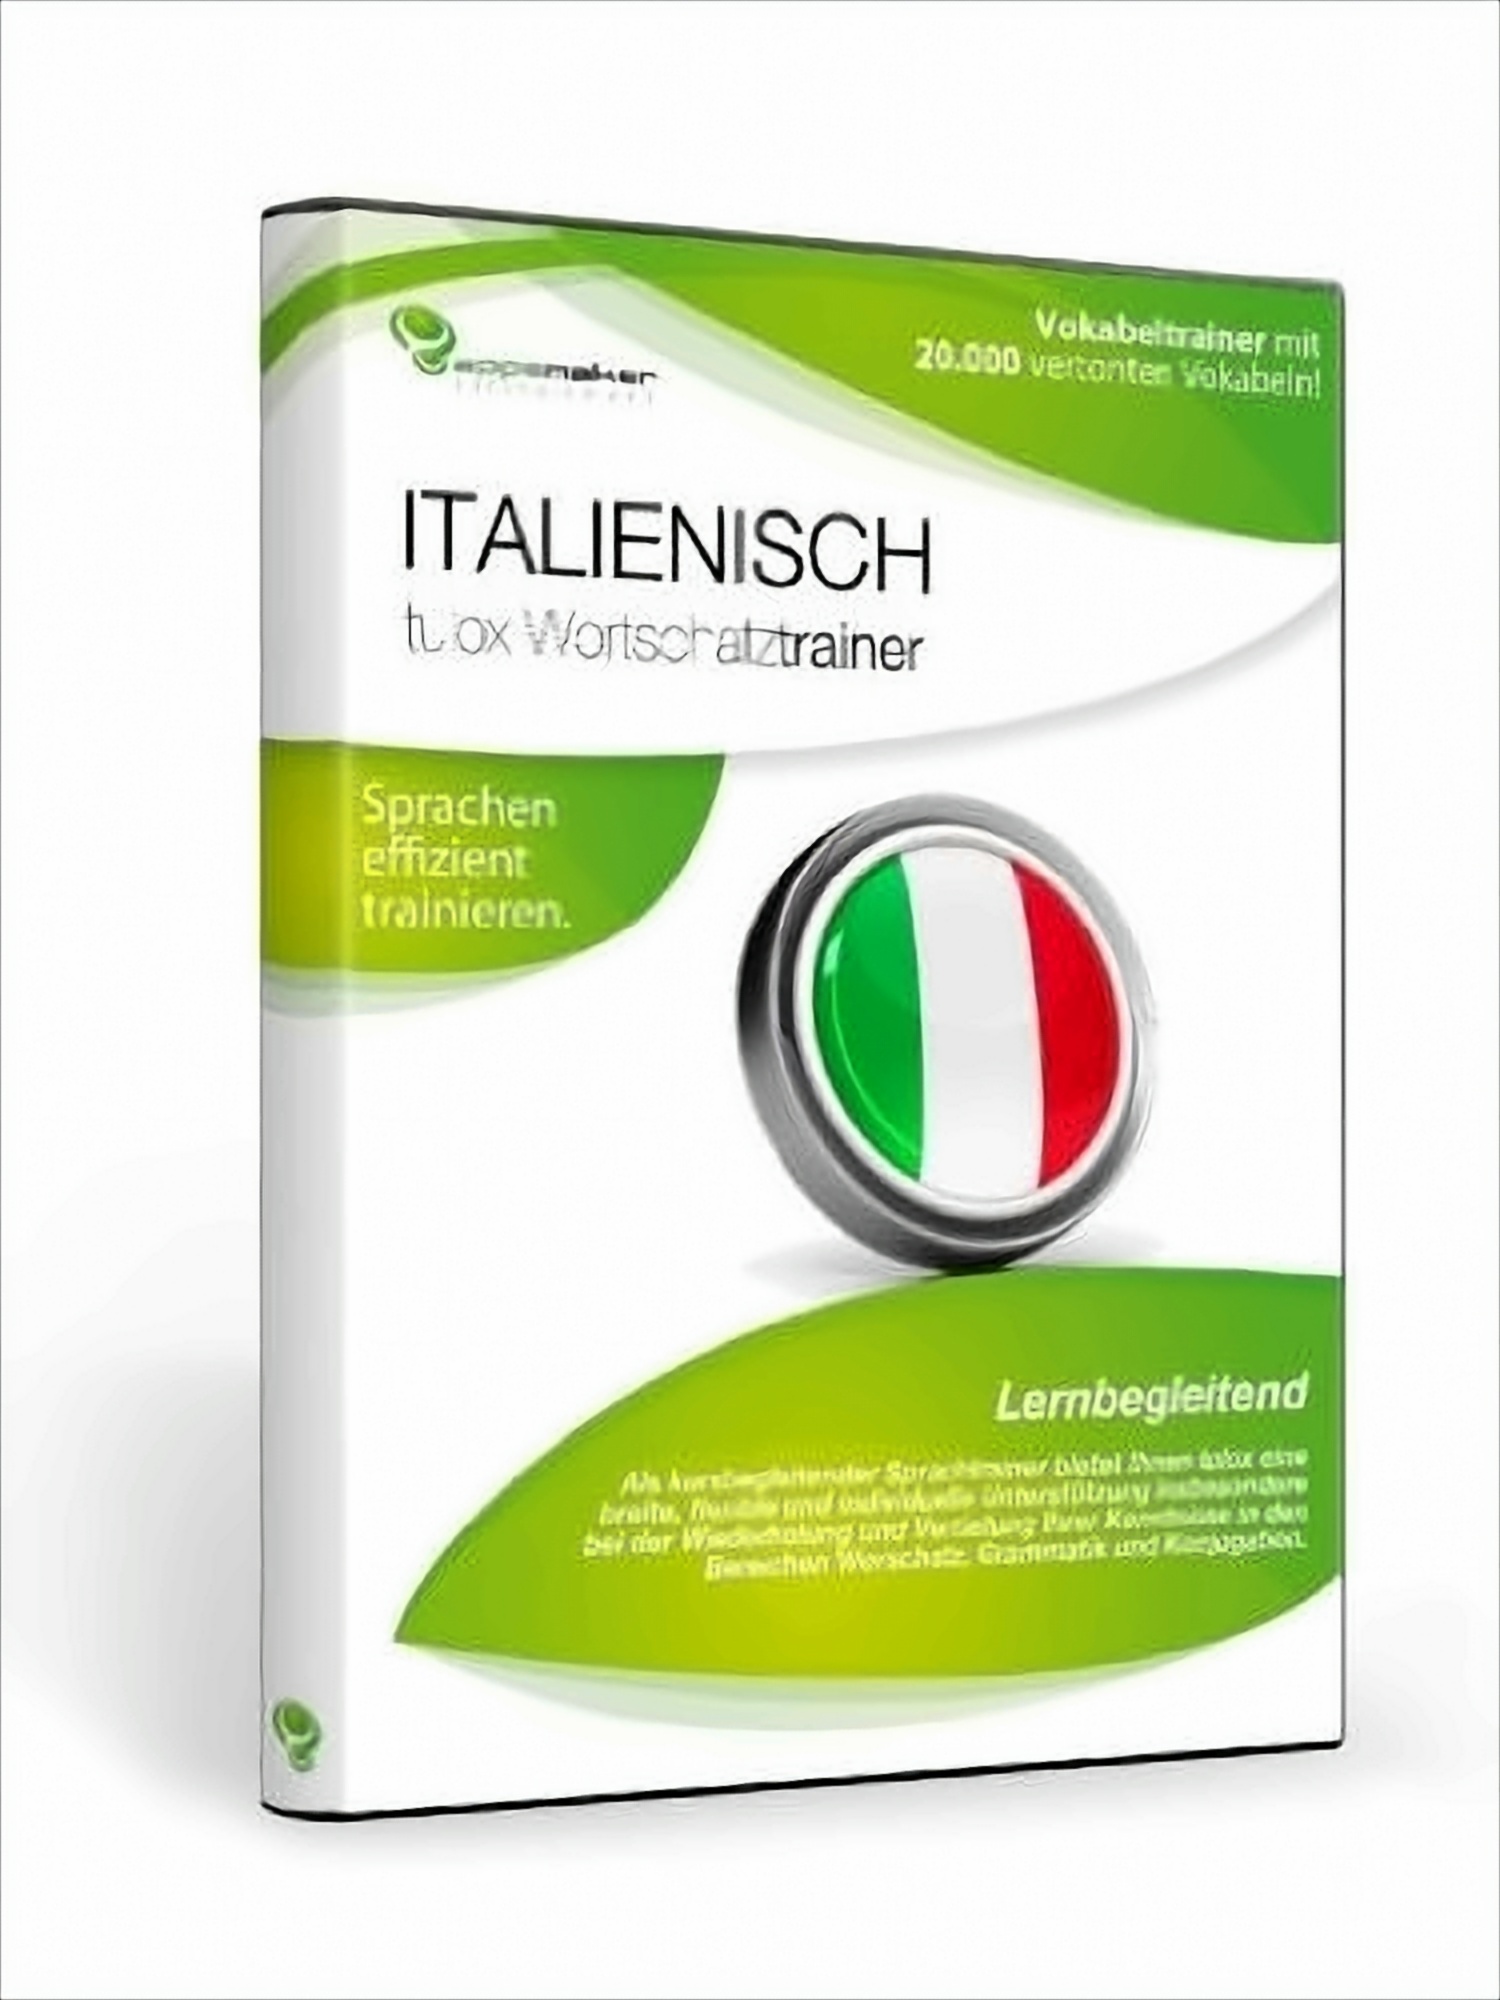 tulox Wortschatztrainer Italienisch von appsmaker